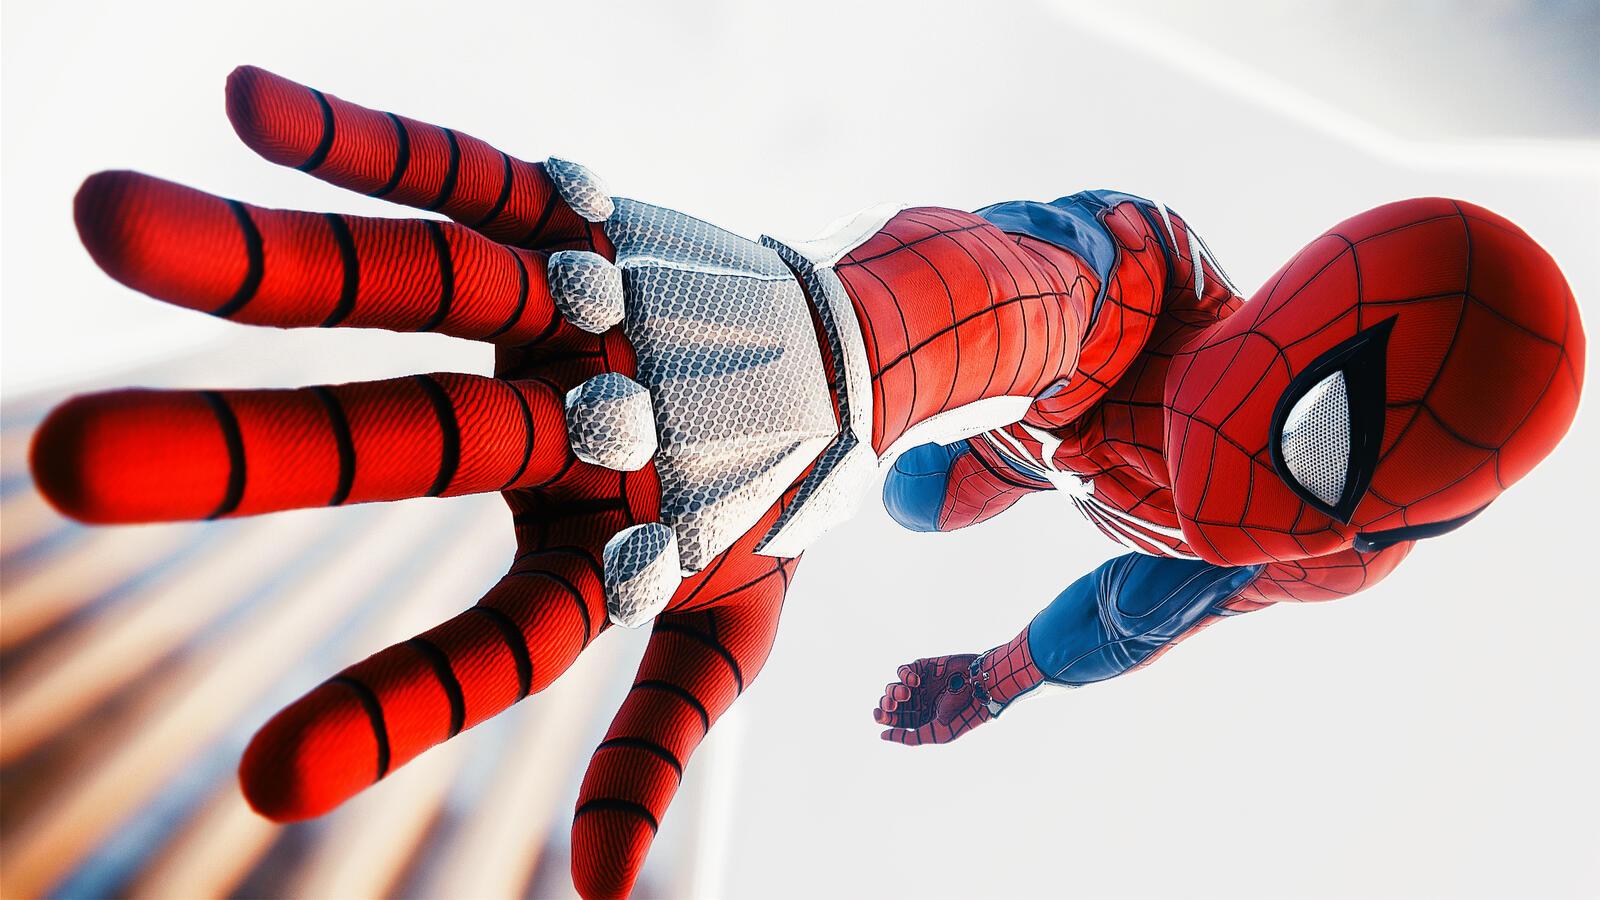 Wallpapers Spiderman PS4 hero costume on the desktop